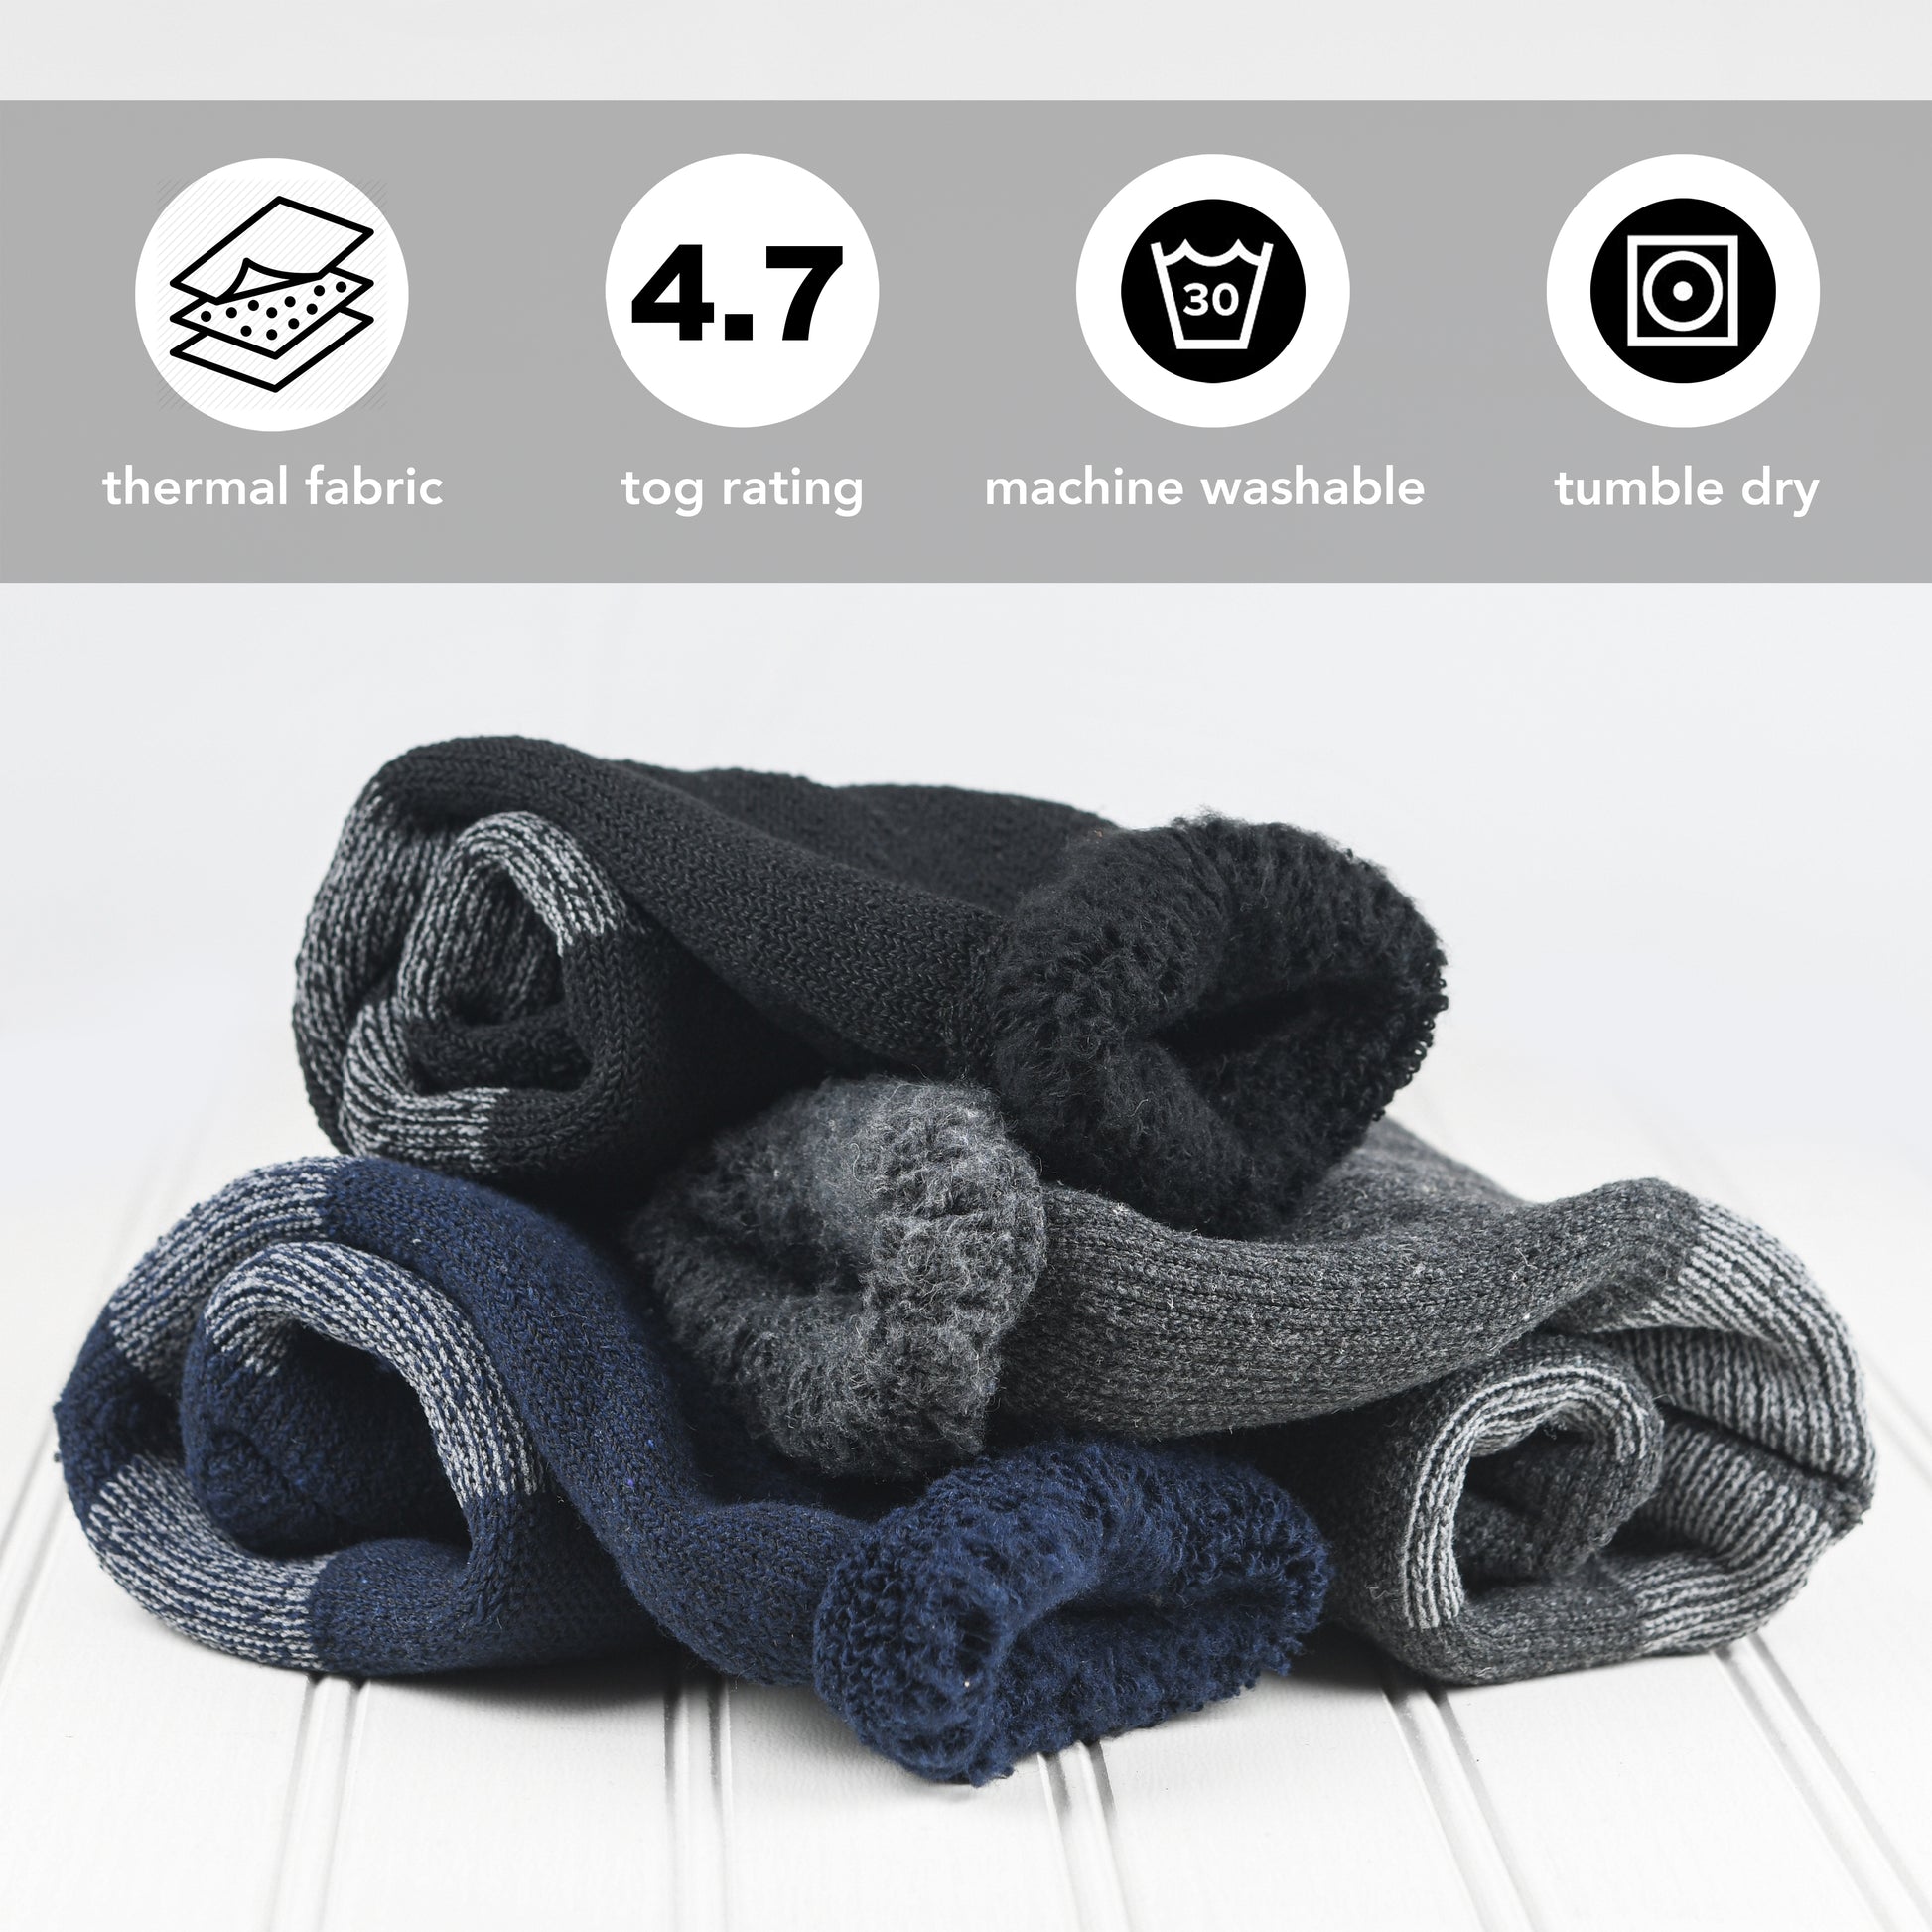 Debra Weitzner - Paquete de 6 calcetines térmicos cálidos para hombres y  mujeres, para uso con botas de invierno en climas extremos fríos